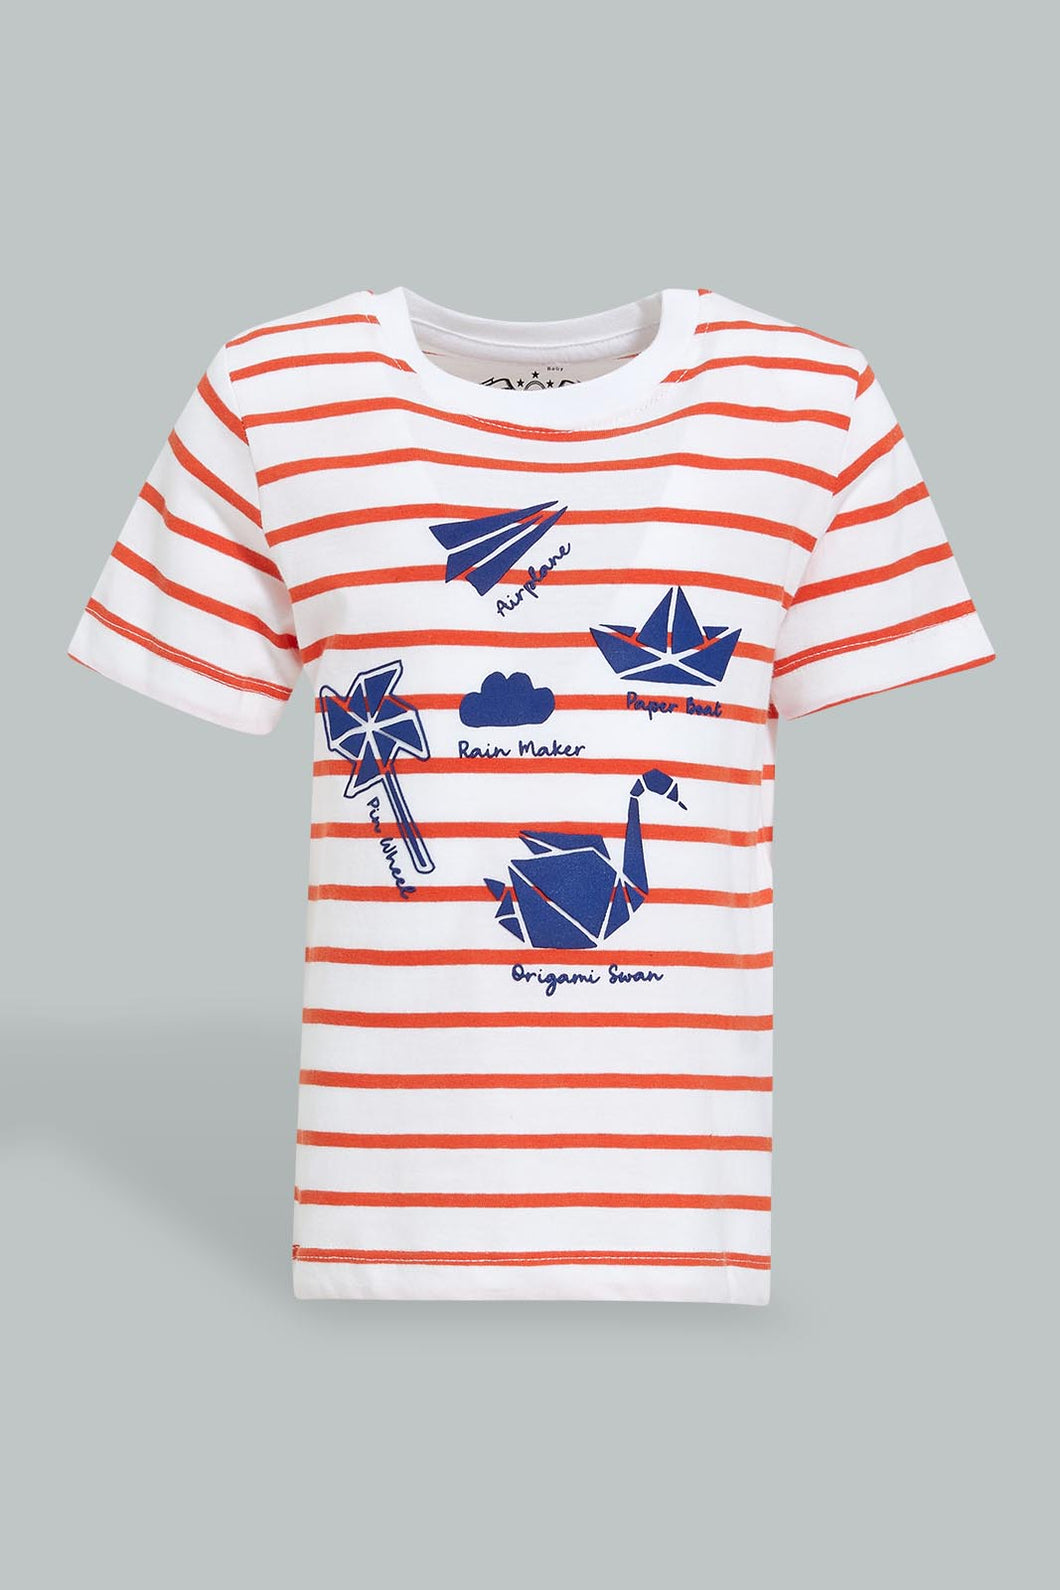 Red And White Stripe T-Shirt For Baby Boys تيشيرت مخطط باللون الأحمر والأبيض للأولاد الرضع